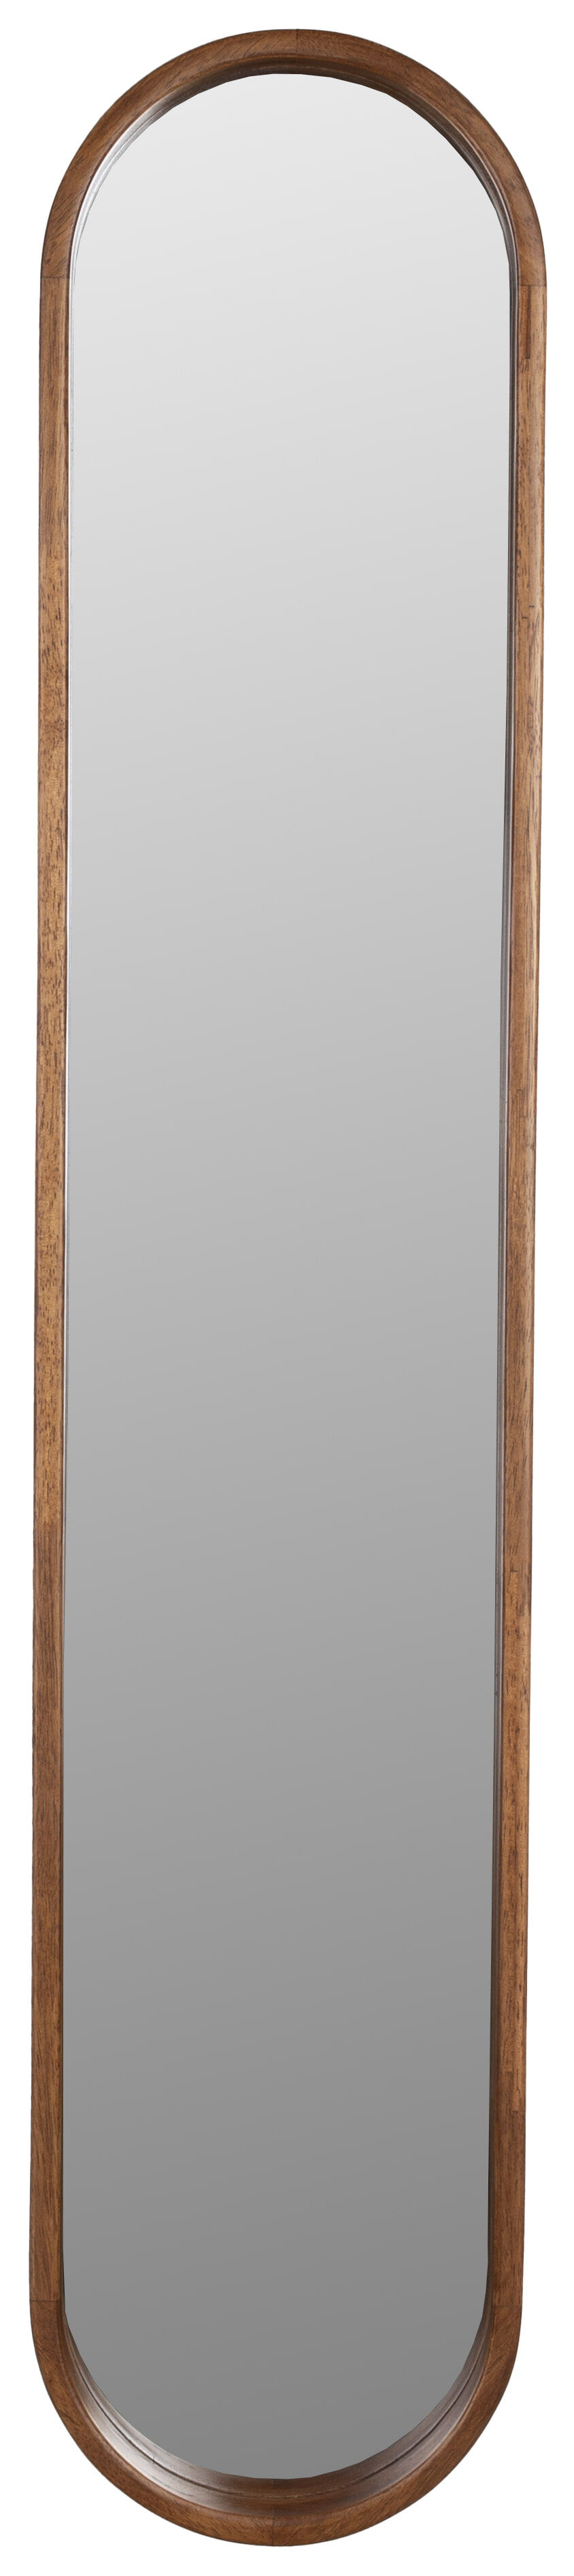 ZILT Ovale Spiegel Rania Rubberhout, 120 x 24cm - Bruin